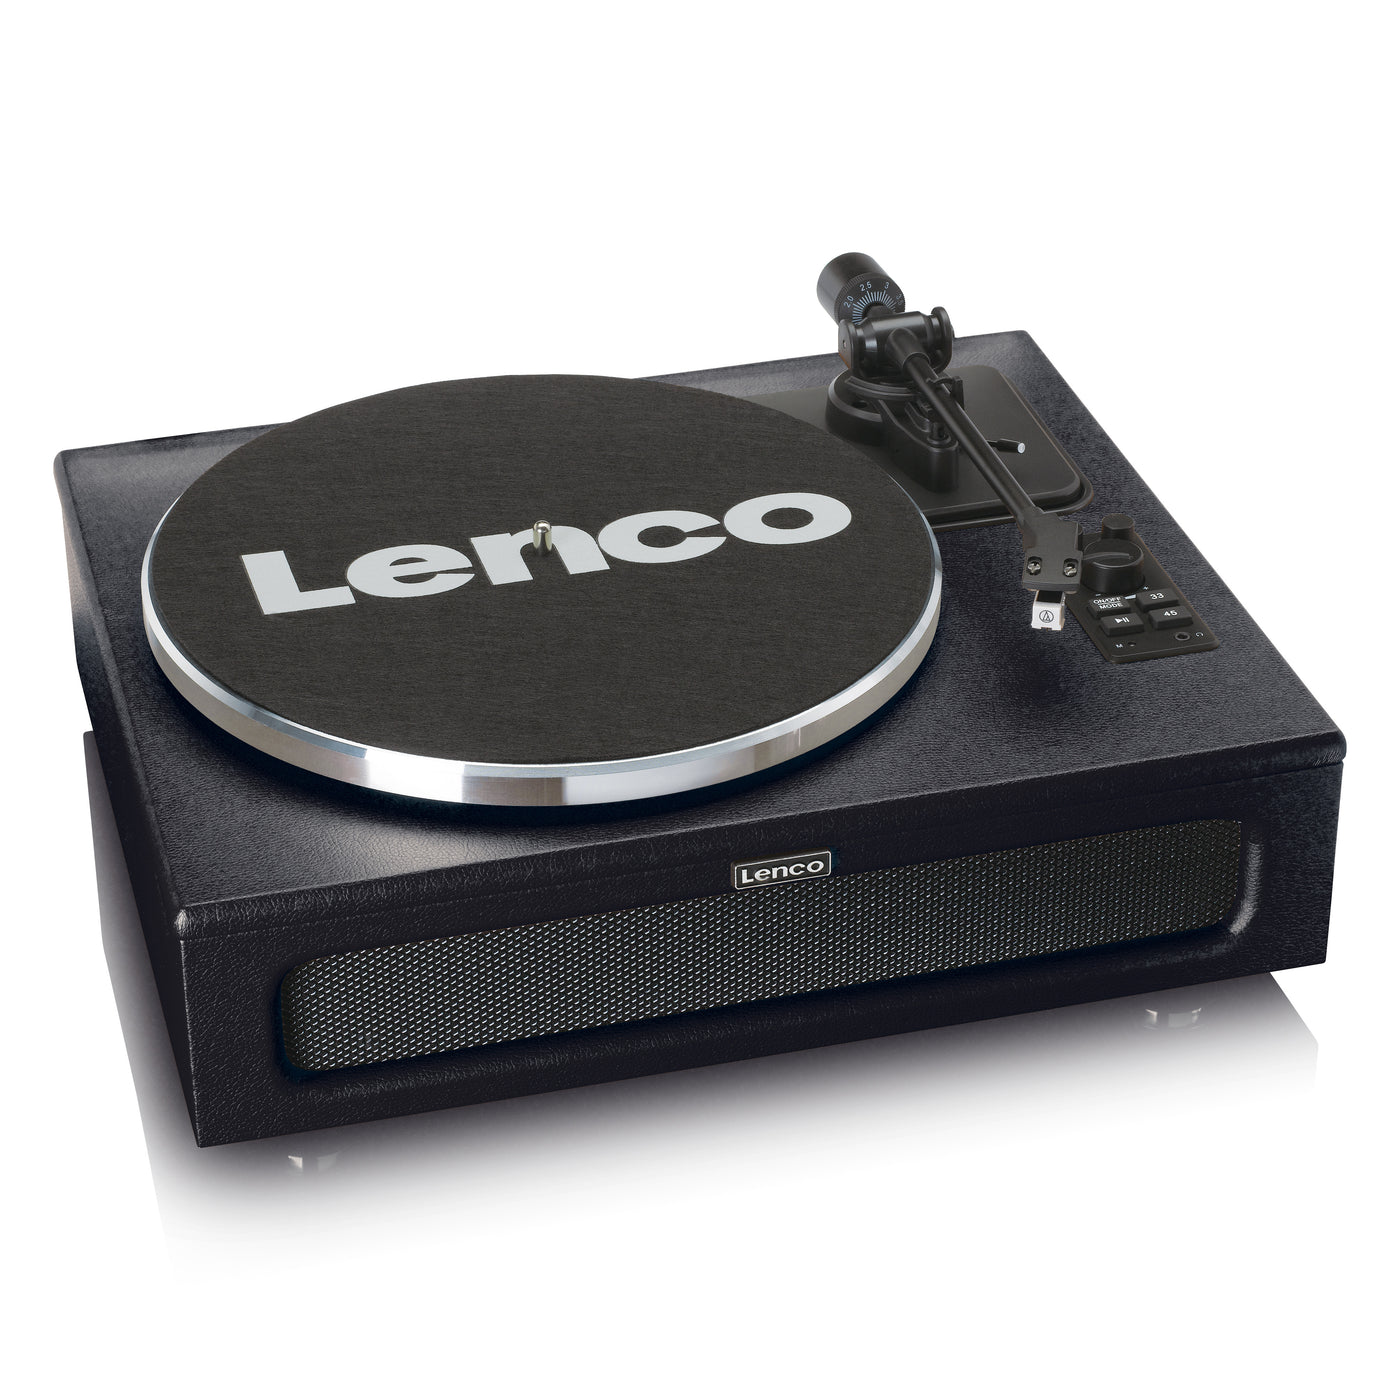 Jetzt LS-430BK Lenco.de Offizieller Webshop – im kaufen? Lenco Lenco - | Webshop offiziellen